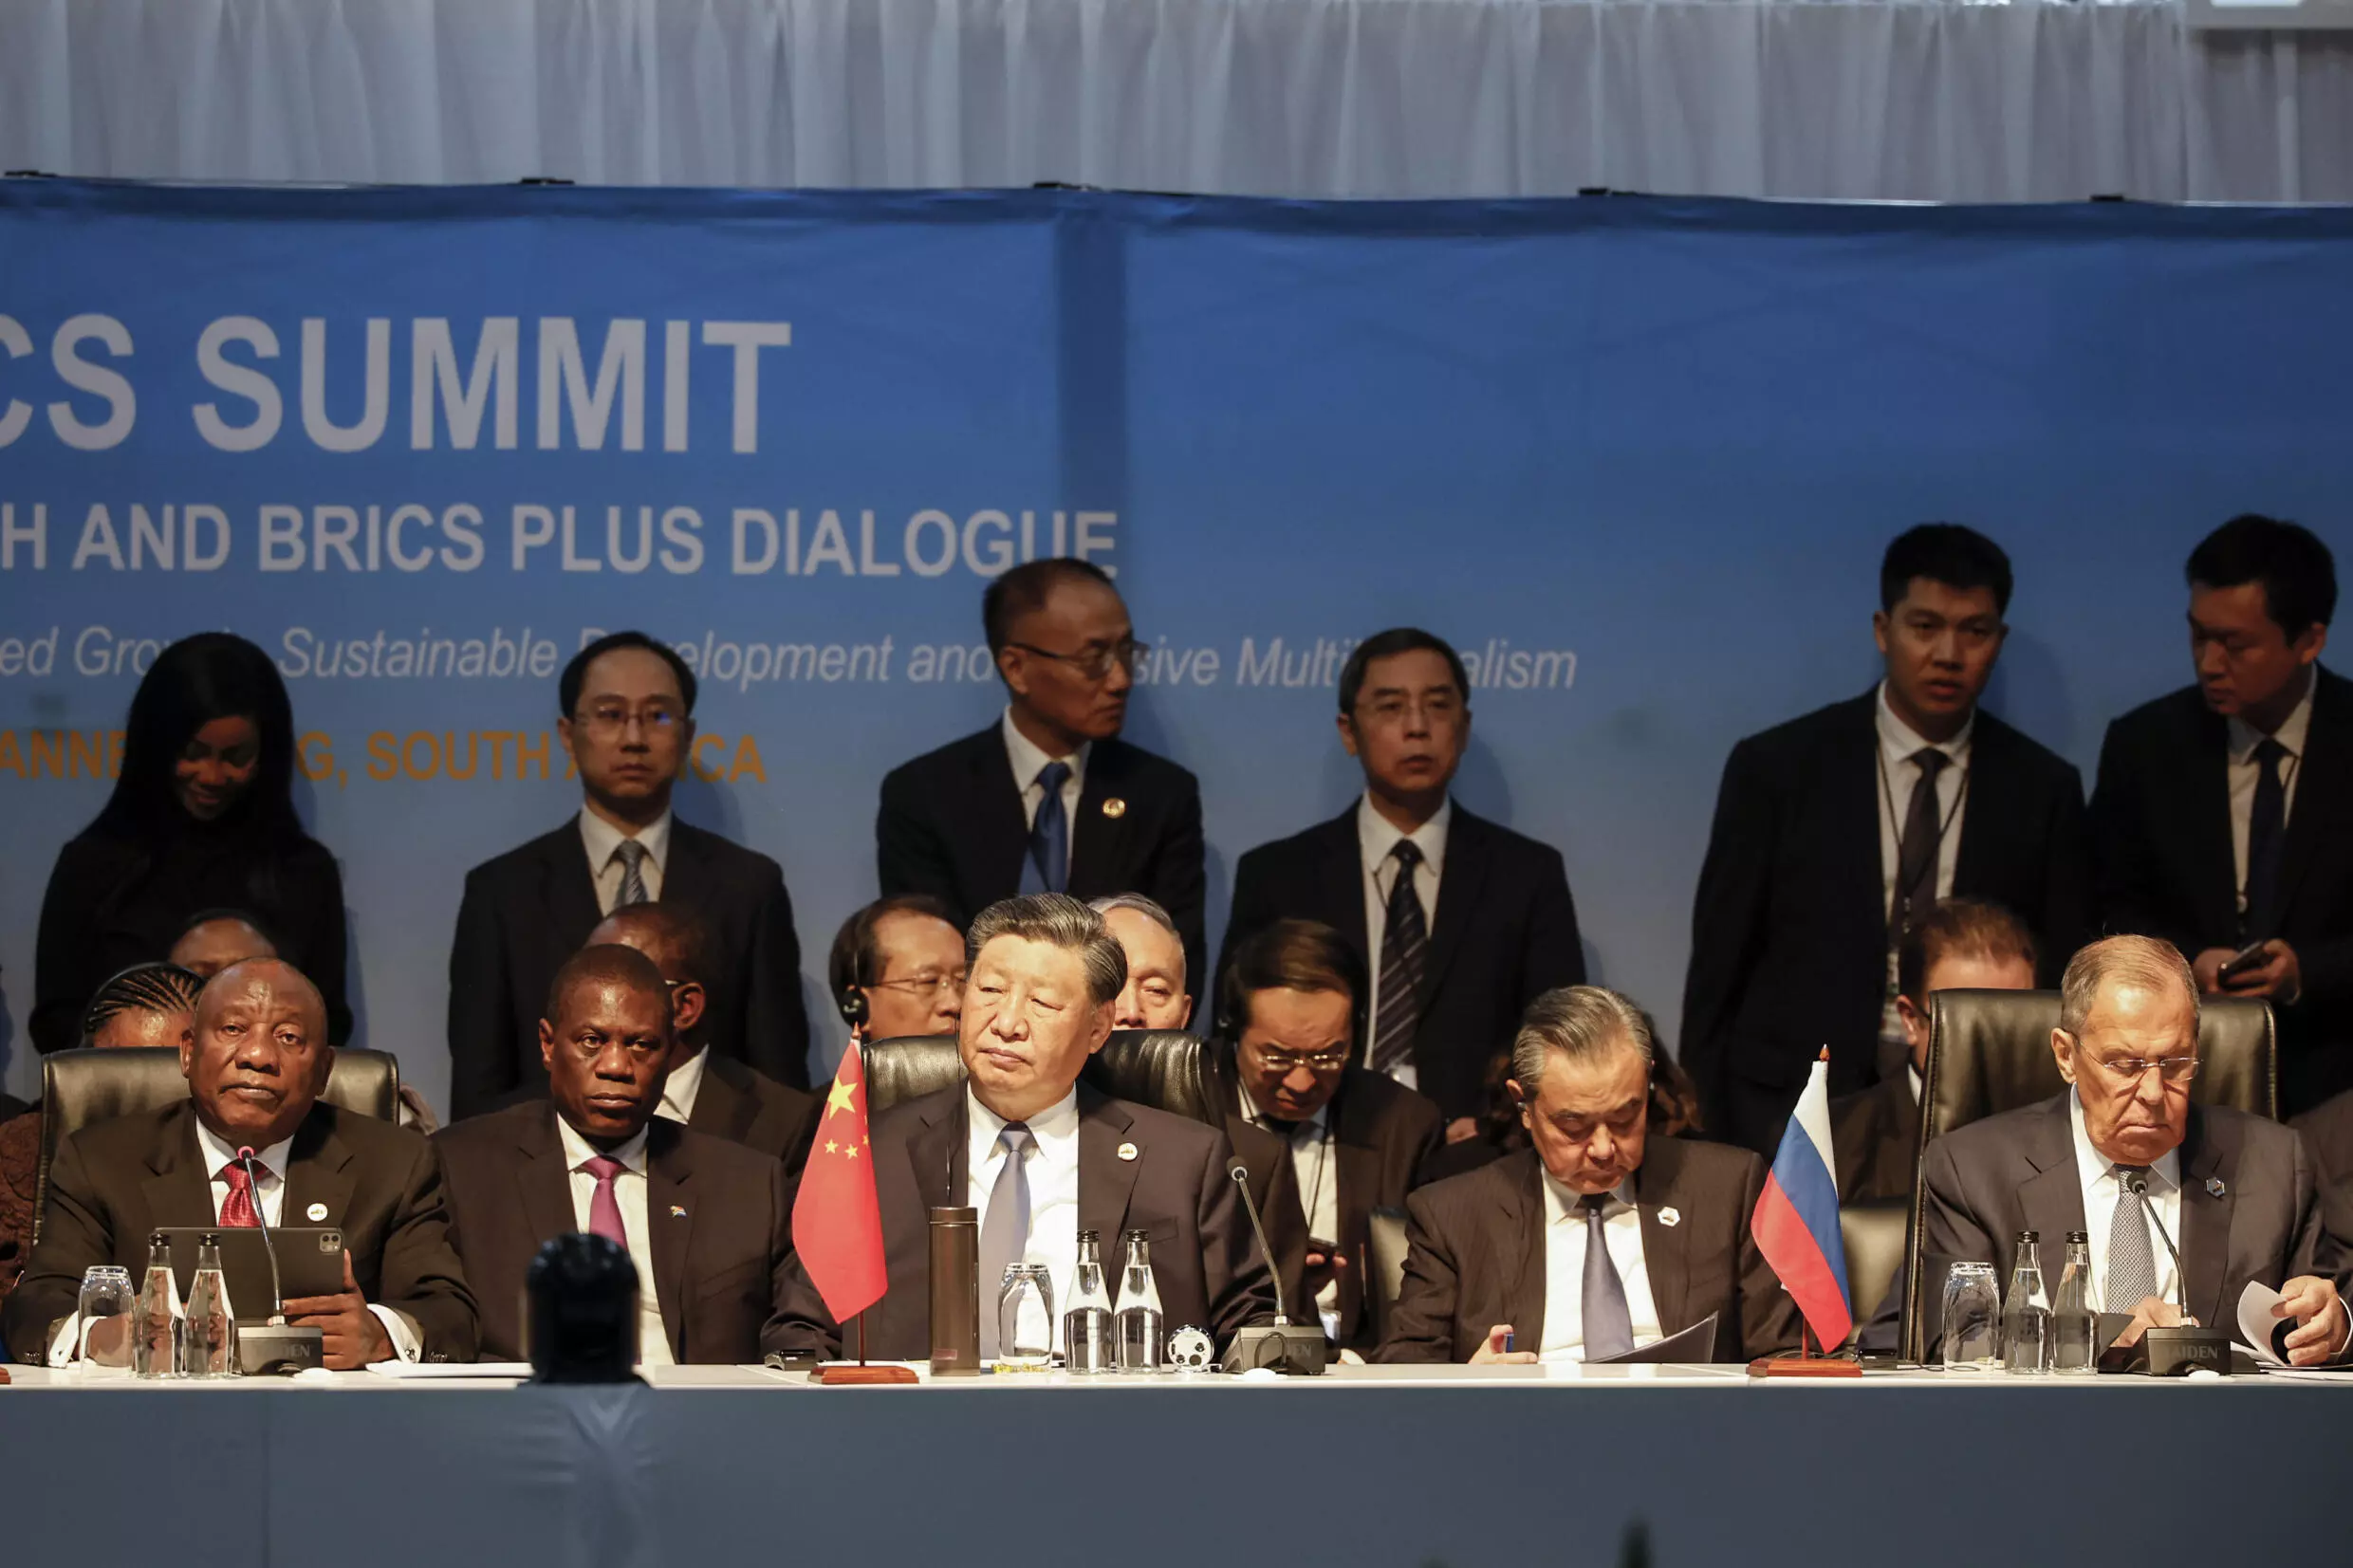 BRICS hails ‘historic’ entry of new members amid bloc rivalry